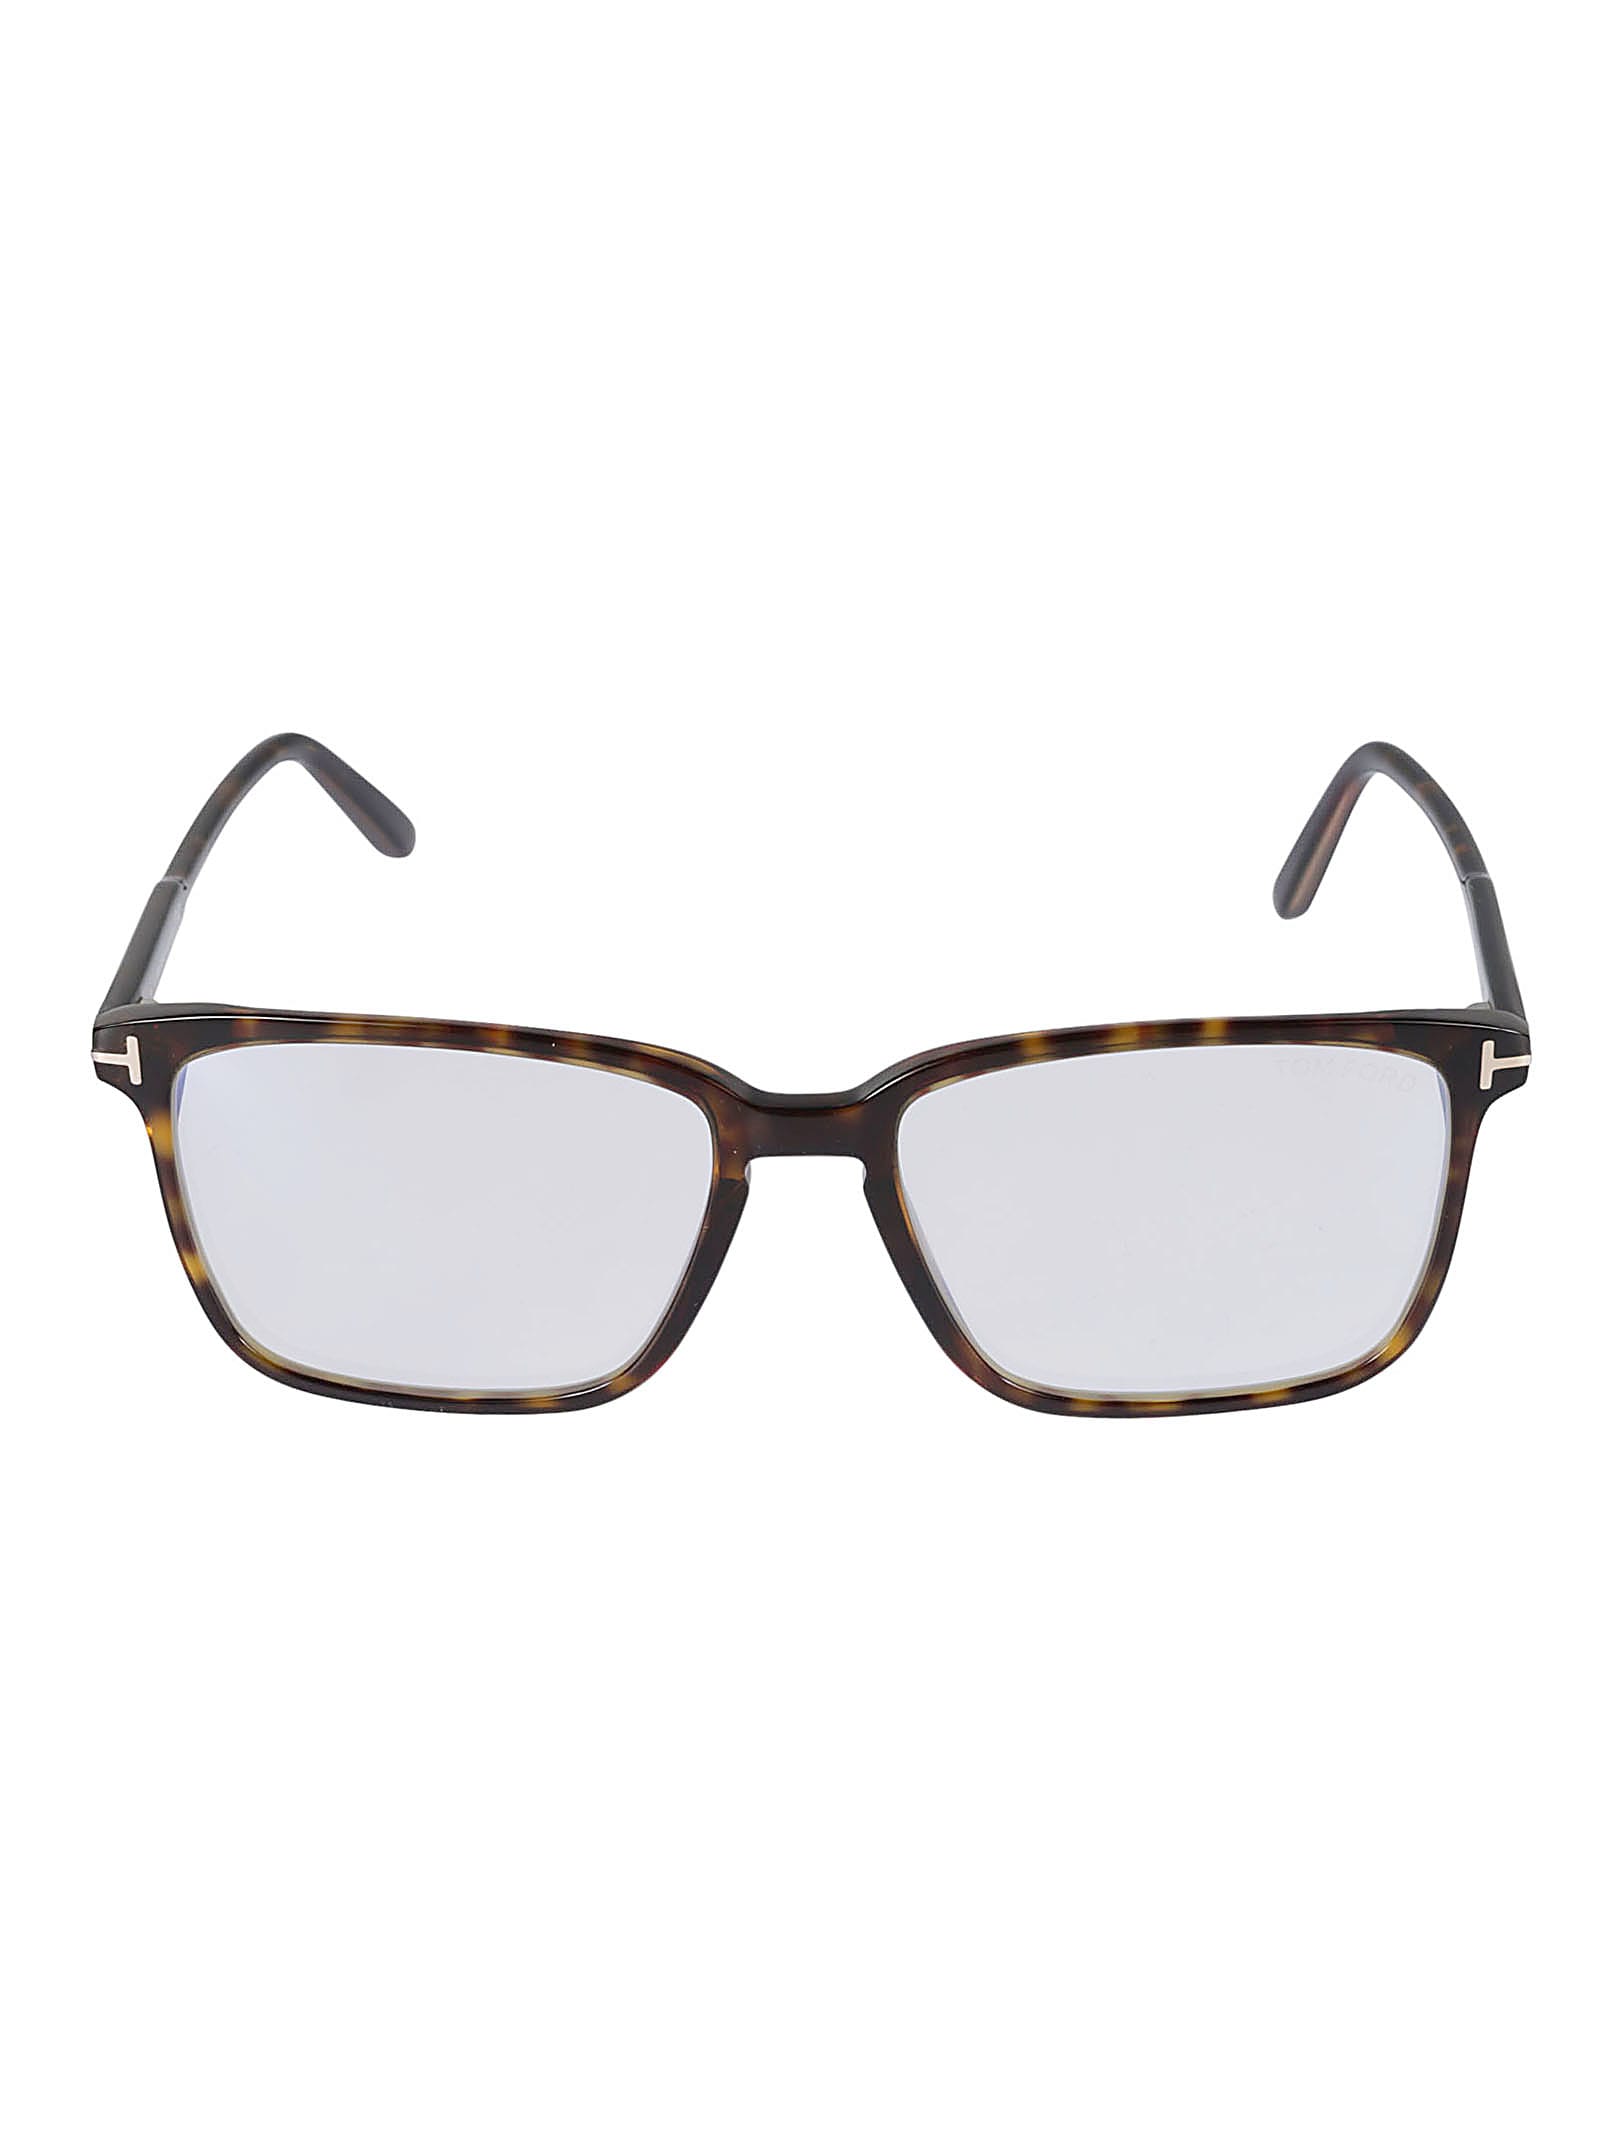 Tom Ford Blue-light Block Glasses In 052